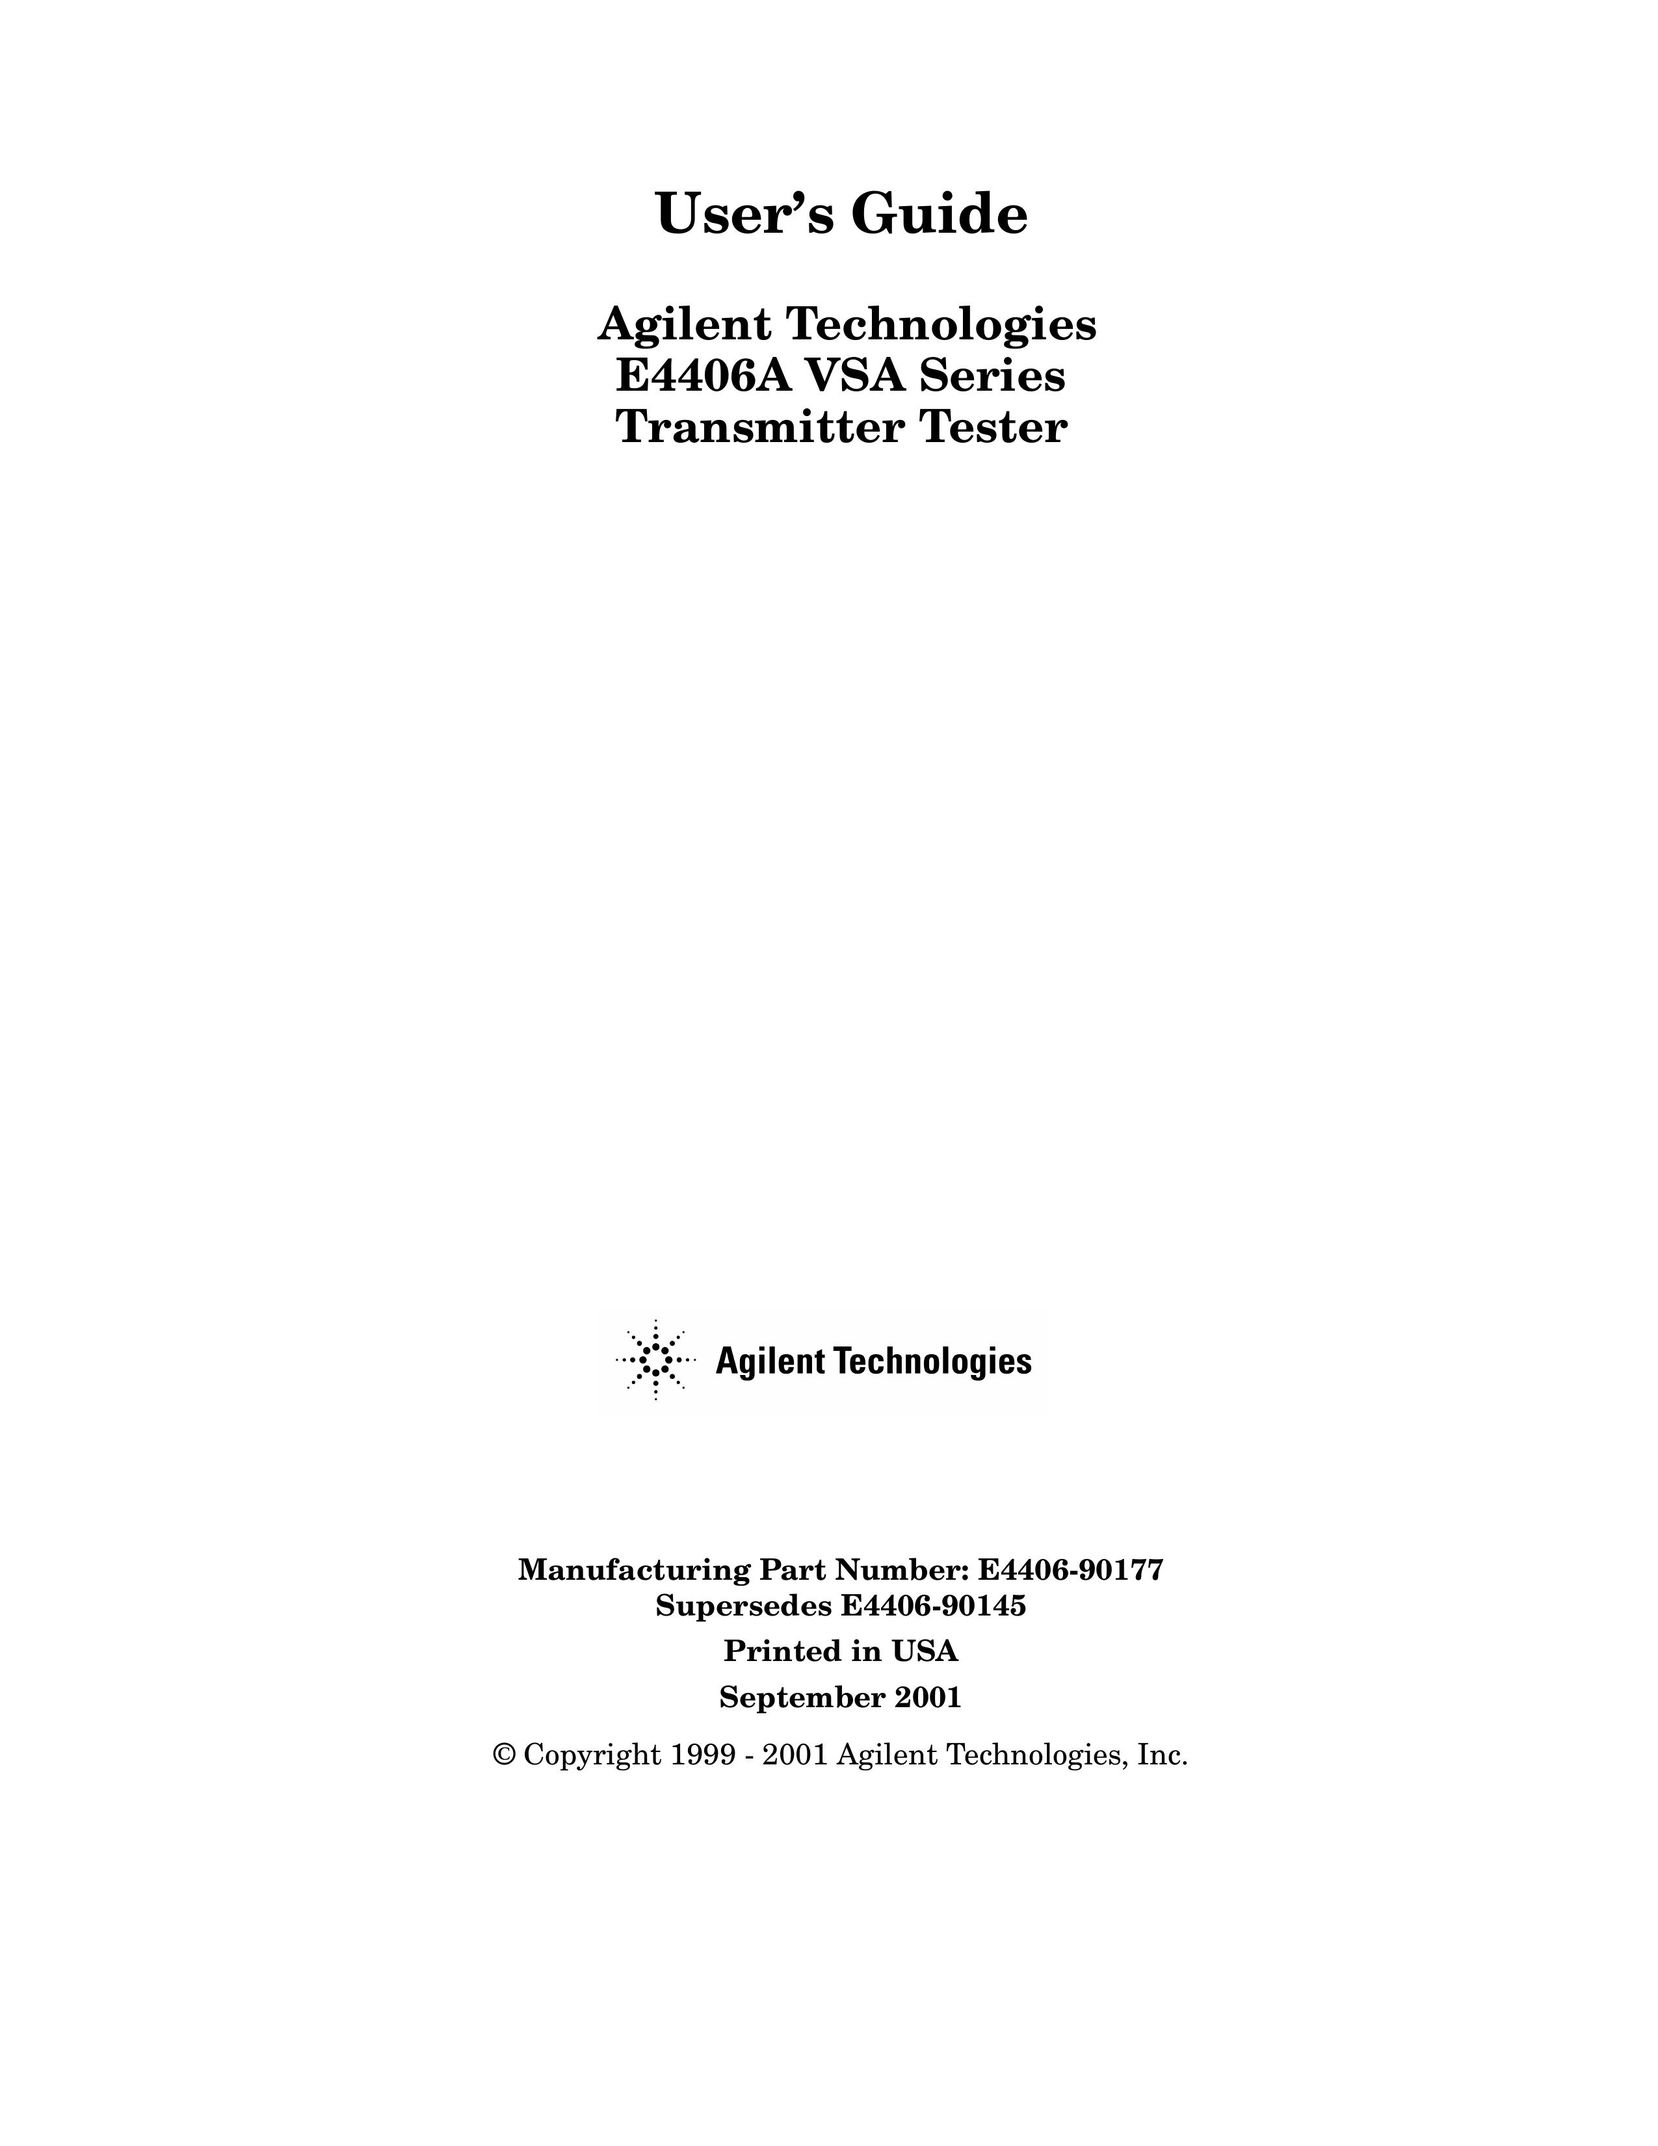 Agilent Technologies E4406A Satellite Radio User Manual